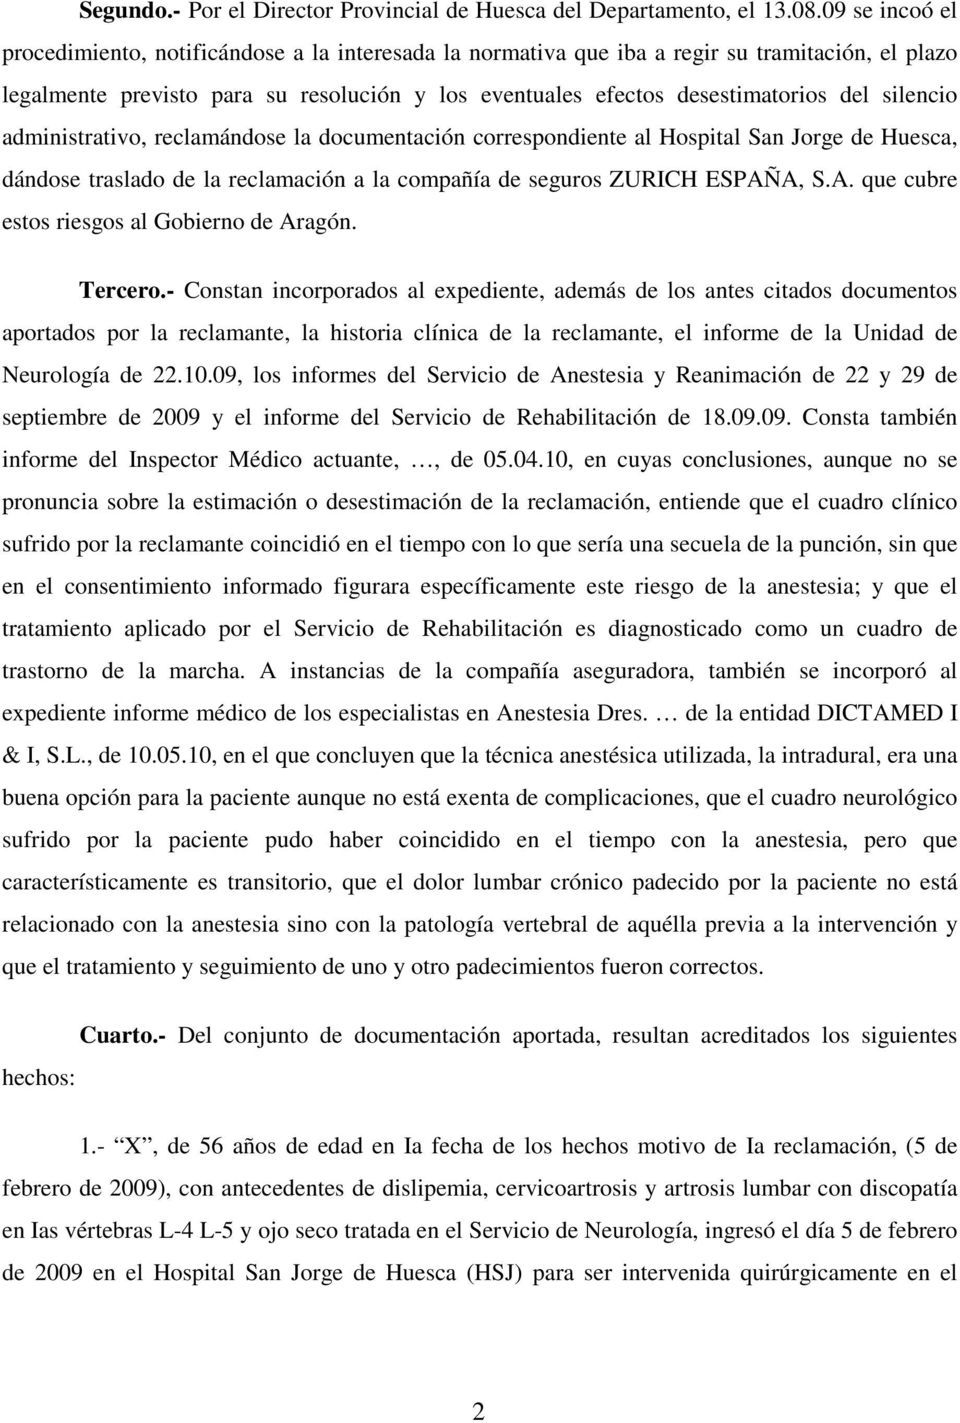 silencio administrativo, reclamándose la documentación correspondiente al Hospital San Jorge de Huesca, dándose traslado de la reclamación a la compañía de seguros ZURICH ESPAÑ